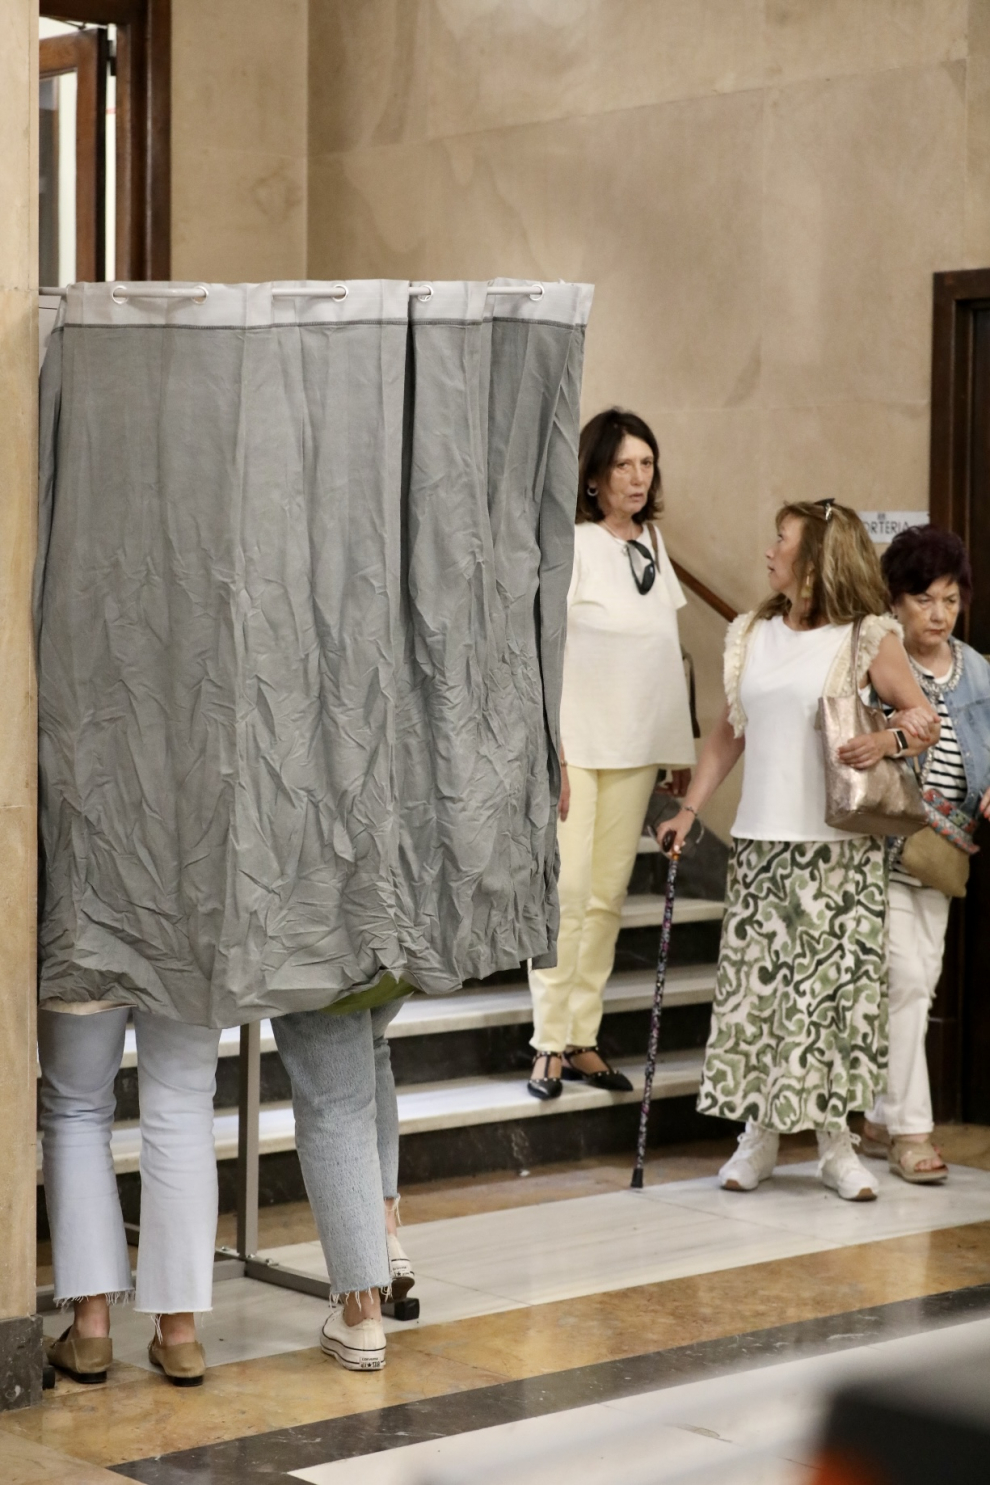 Momentos de la jornada electoral en el colegio ubicado en la sede de la CHE, en Paseo de Sagasta en Zaragoza.